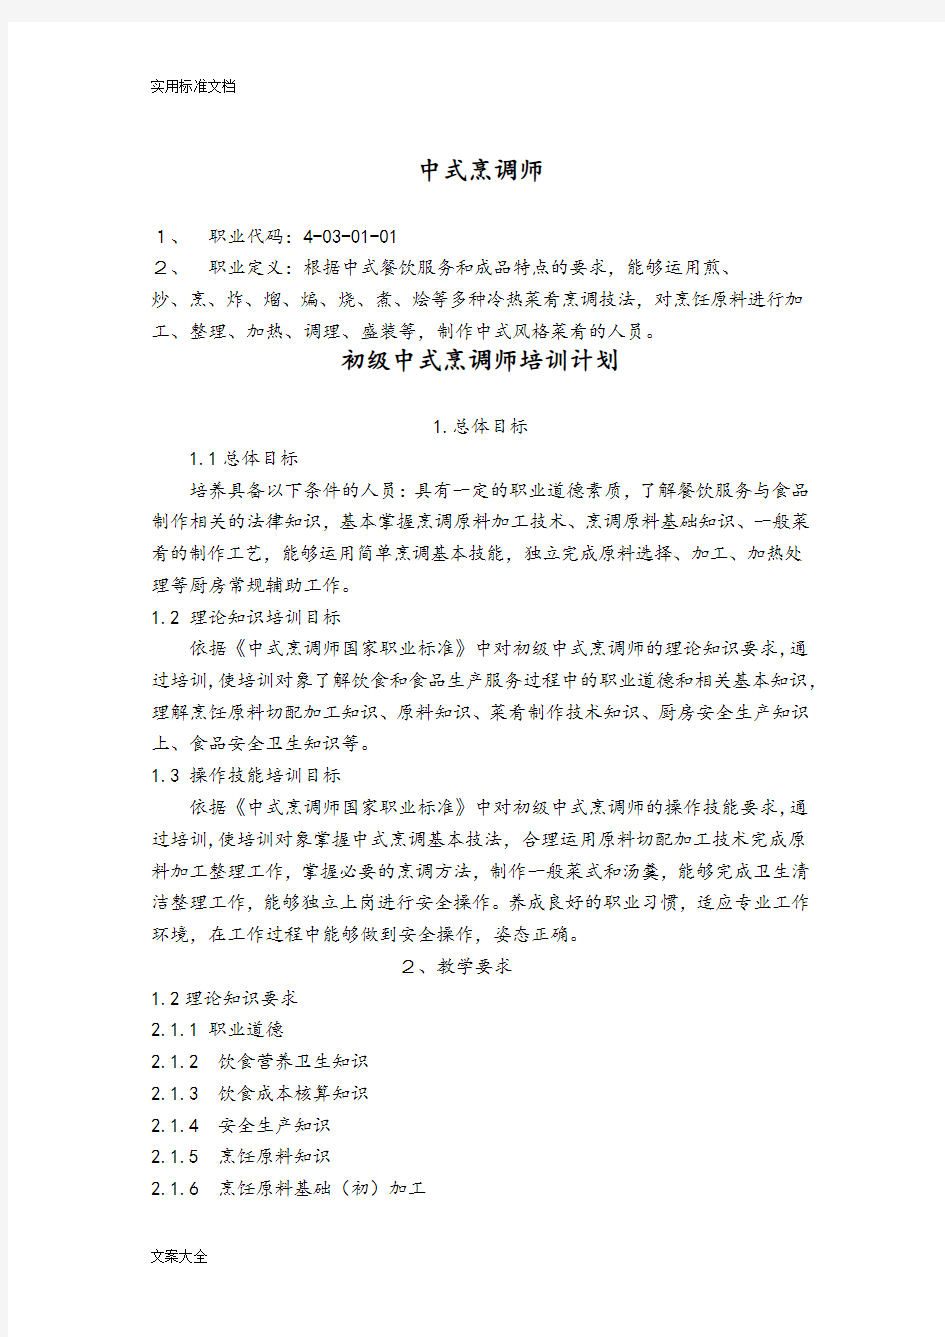 中式烹调师初级教学计划清单大纲设计